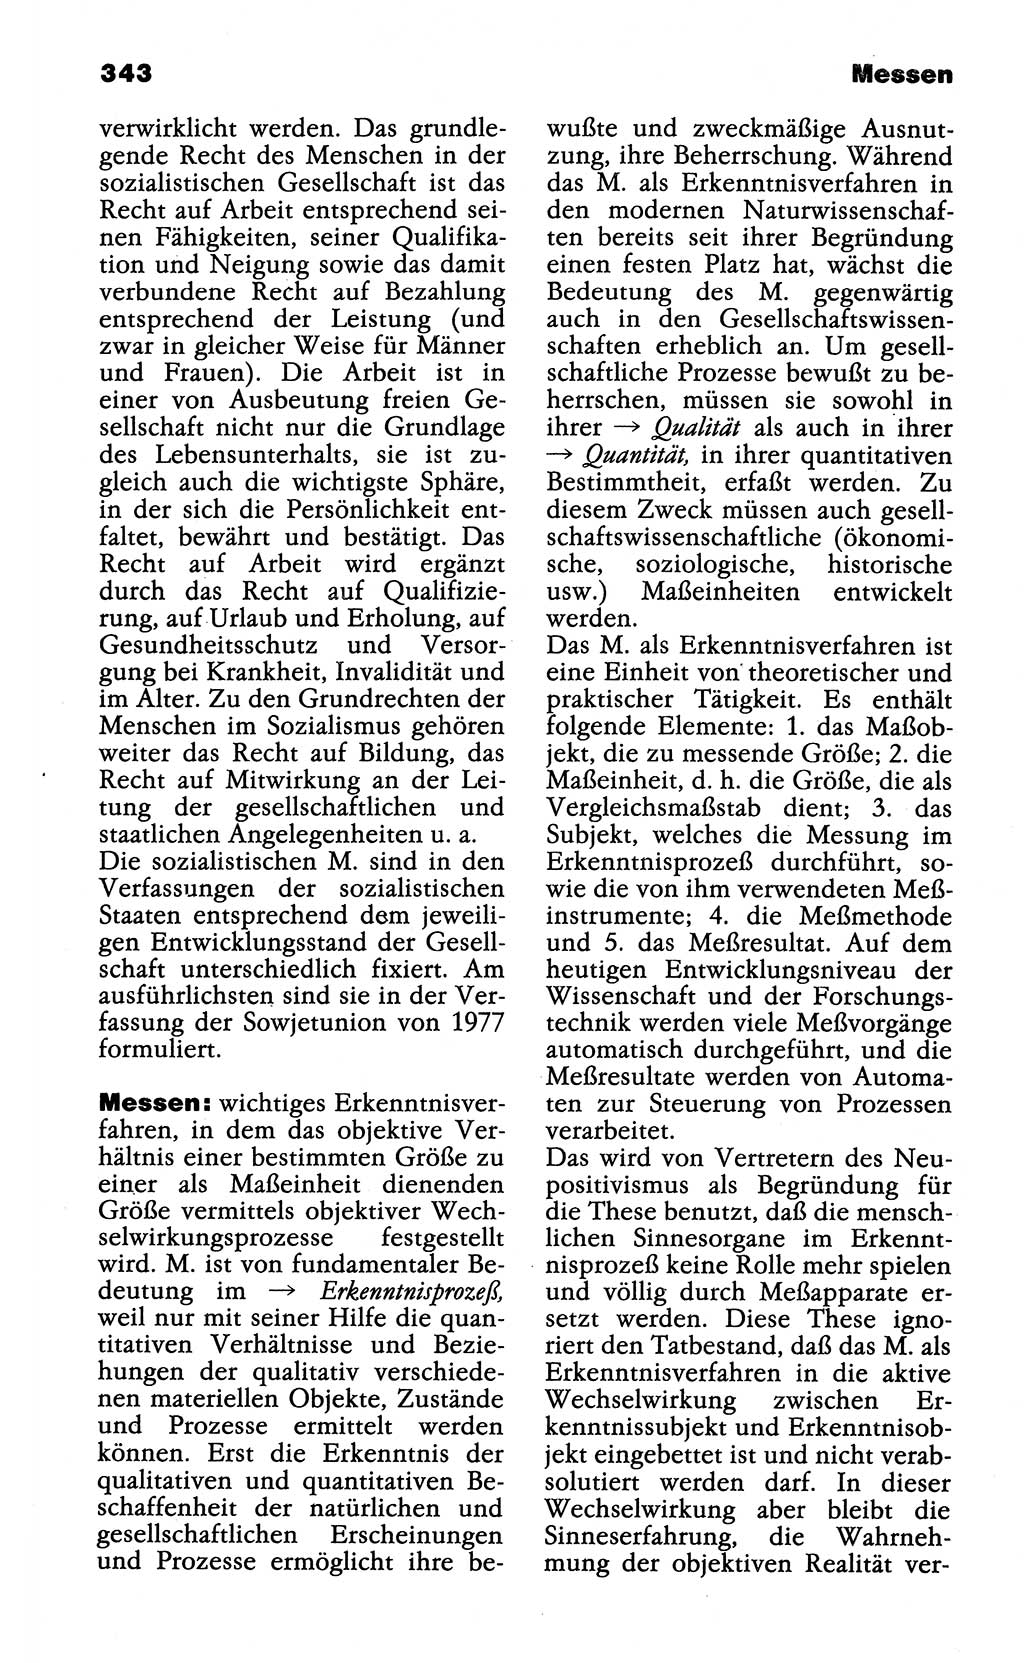 Wörterbuch der marxistisch-leninistischen Philosophie [Deutsche Demokratische Republik (DDR)] 1985, Seite 343 (Wb. ML Phil. DDR 1985, S. 343)